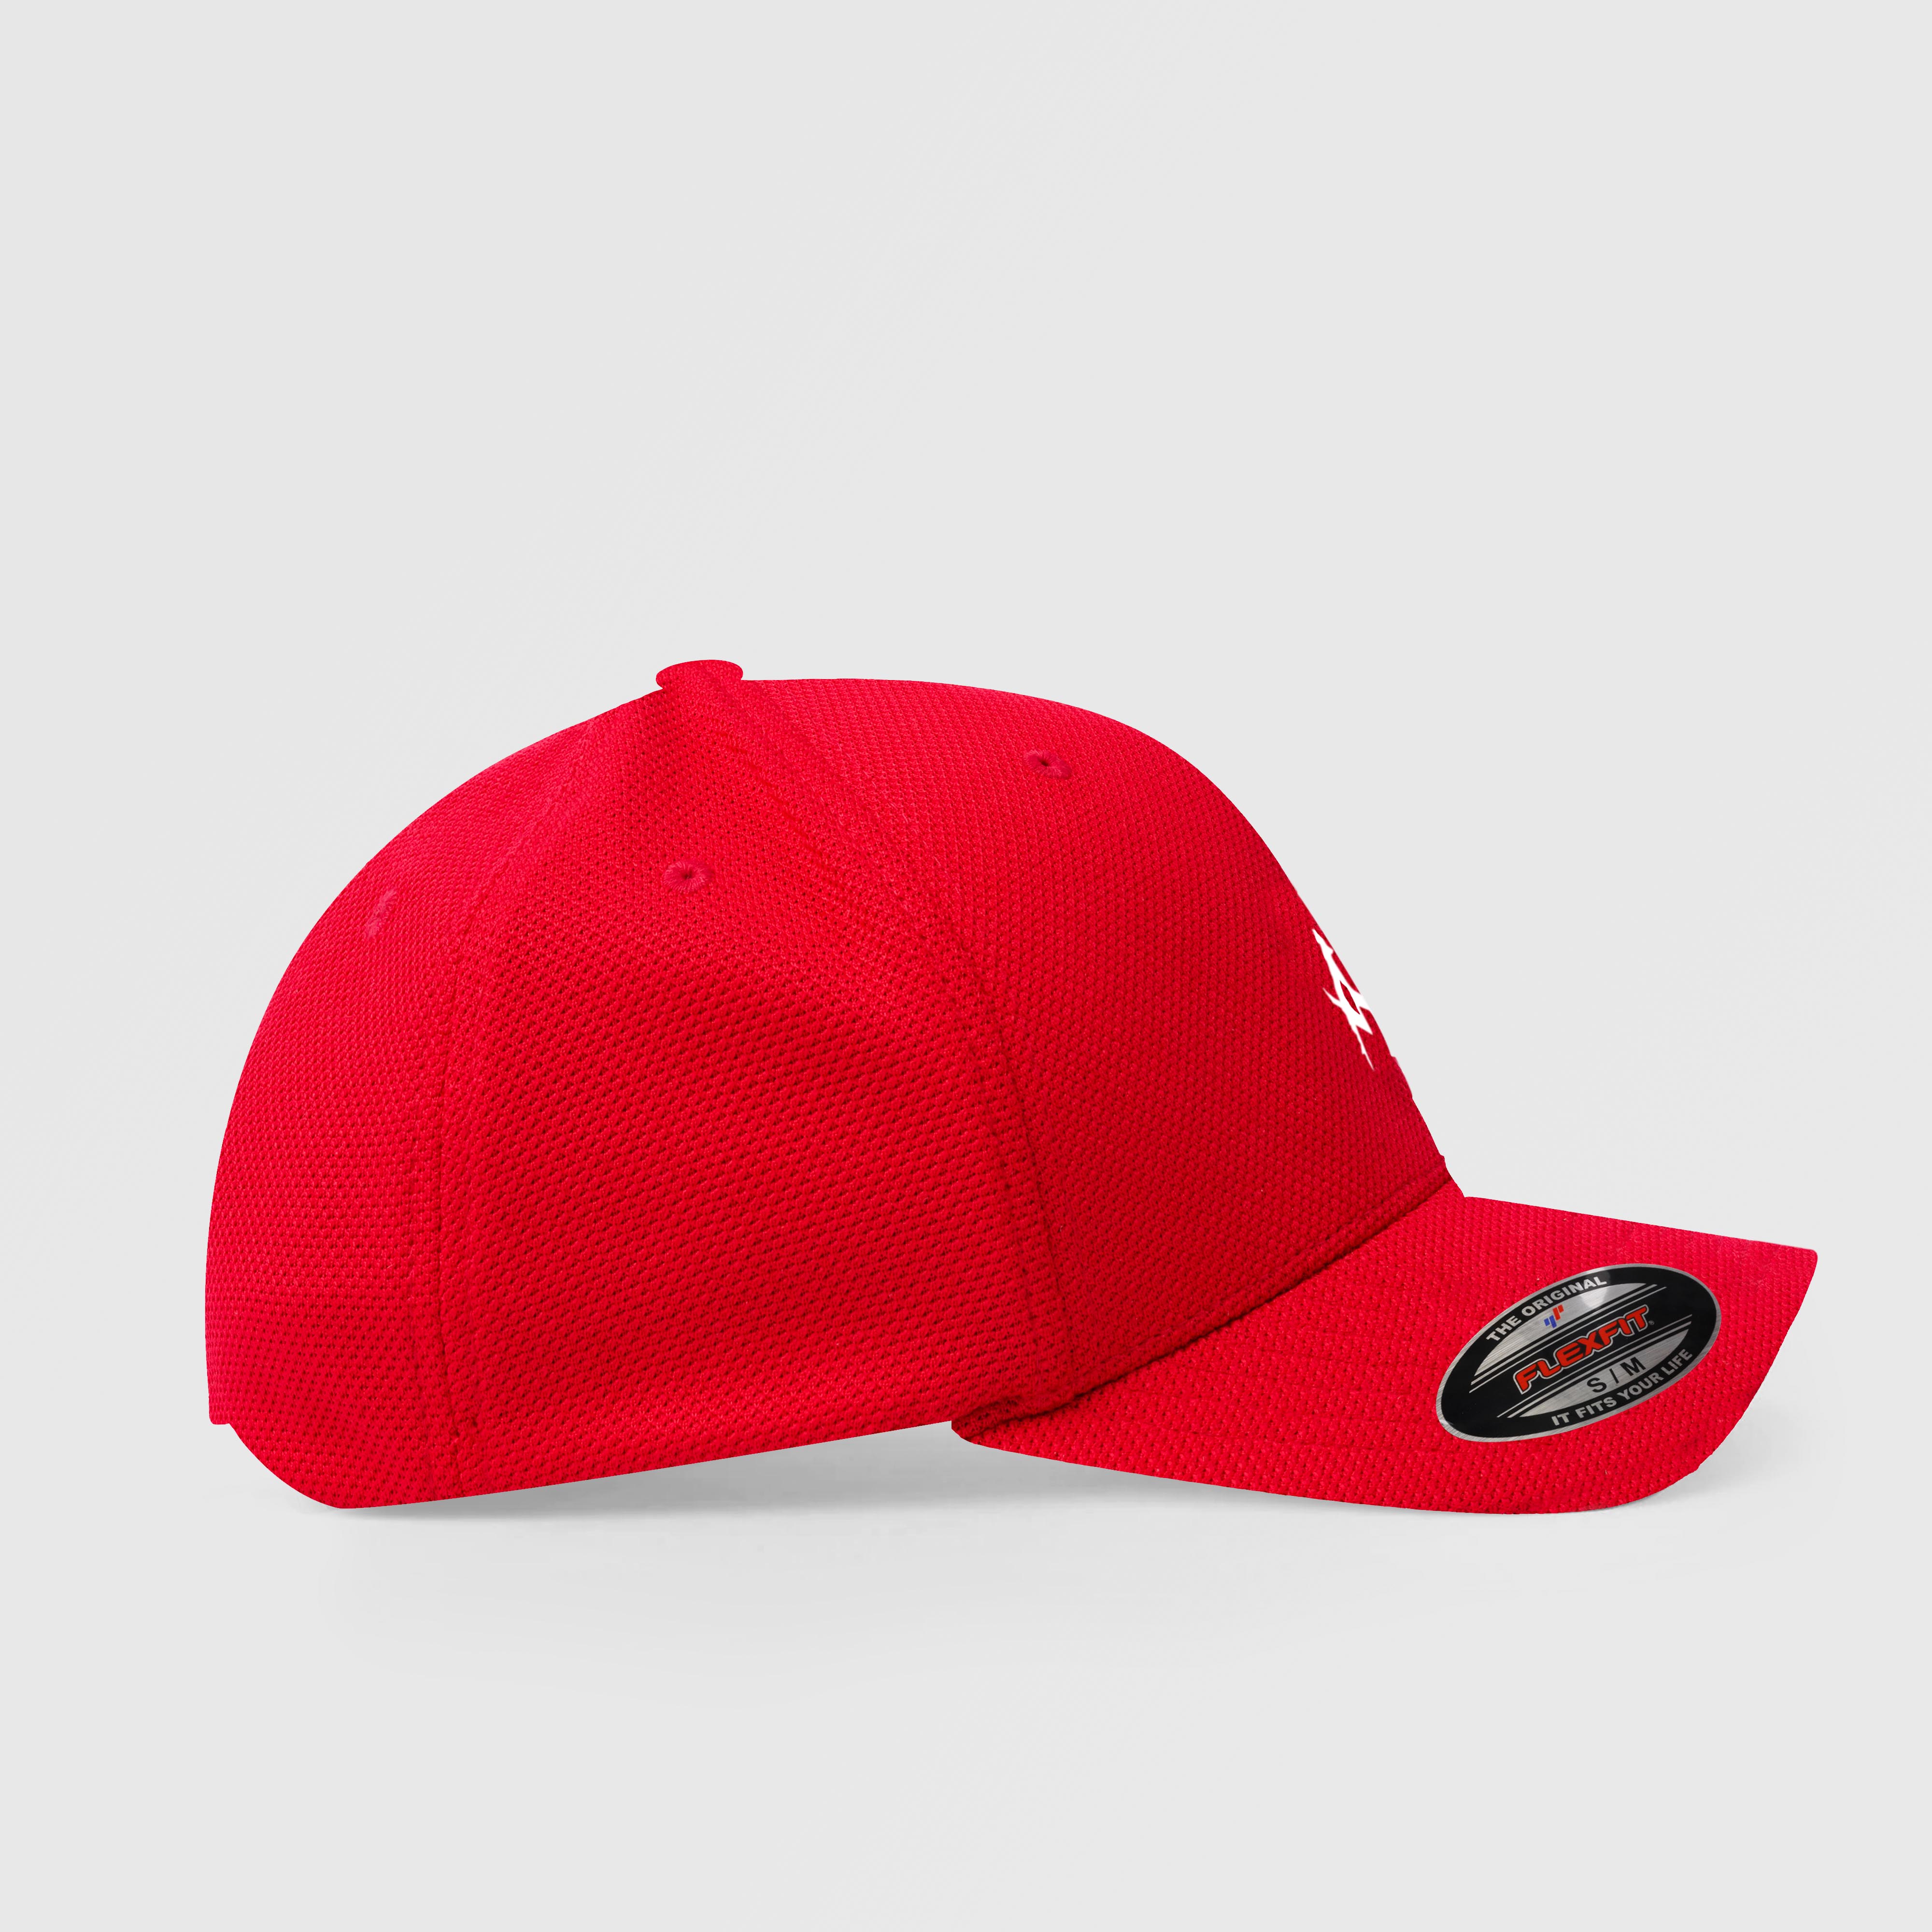 Pro Profile GA Cap (Red)